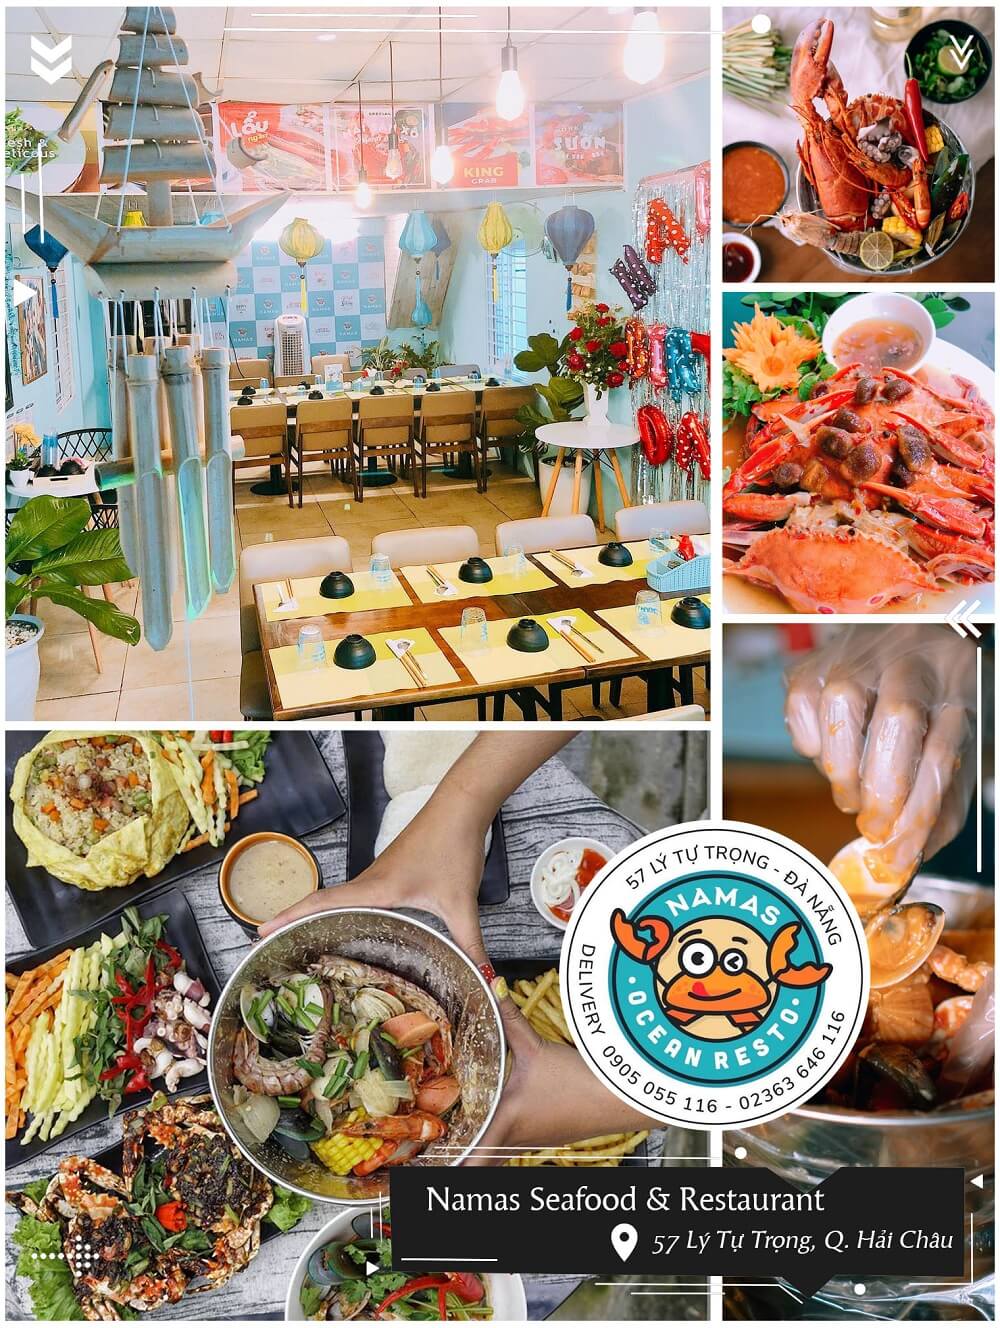 Namas Seafood Restaurant 57 Ly Tu Trong Quan Hai Chau Co So Dich Vu Du Lich An Uong Dat Chuan Tai Dia Ban Thanh Pho Da Nang